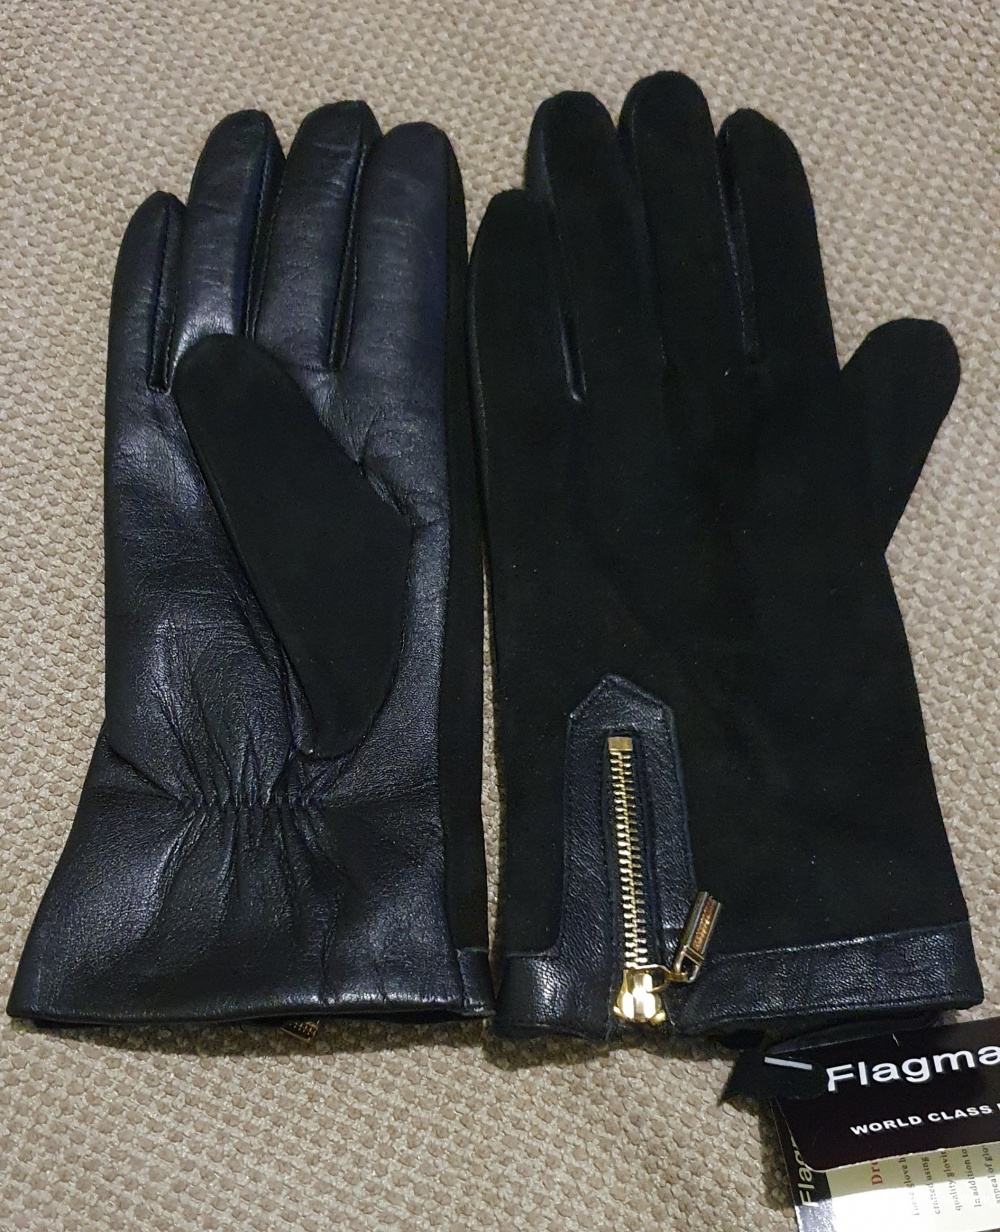 Перчатки Flagman, 8,5